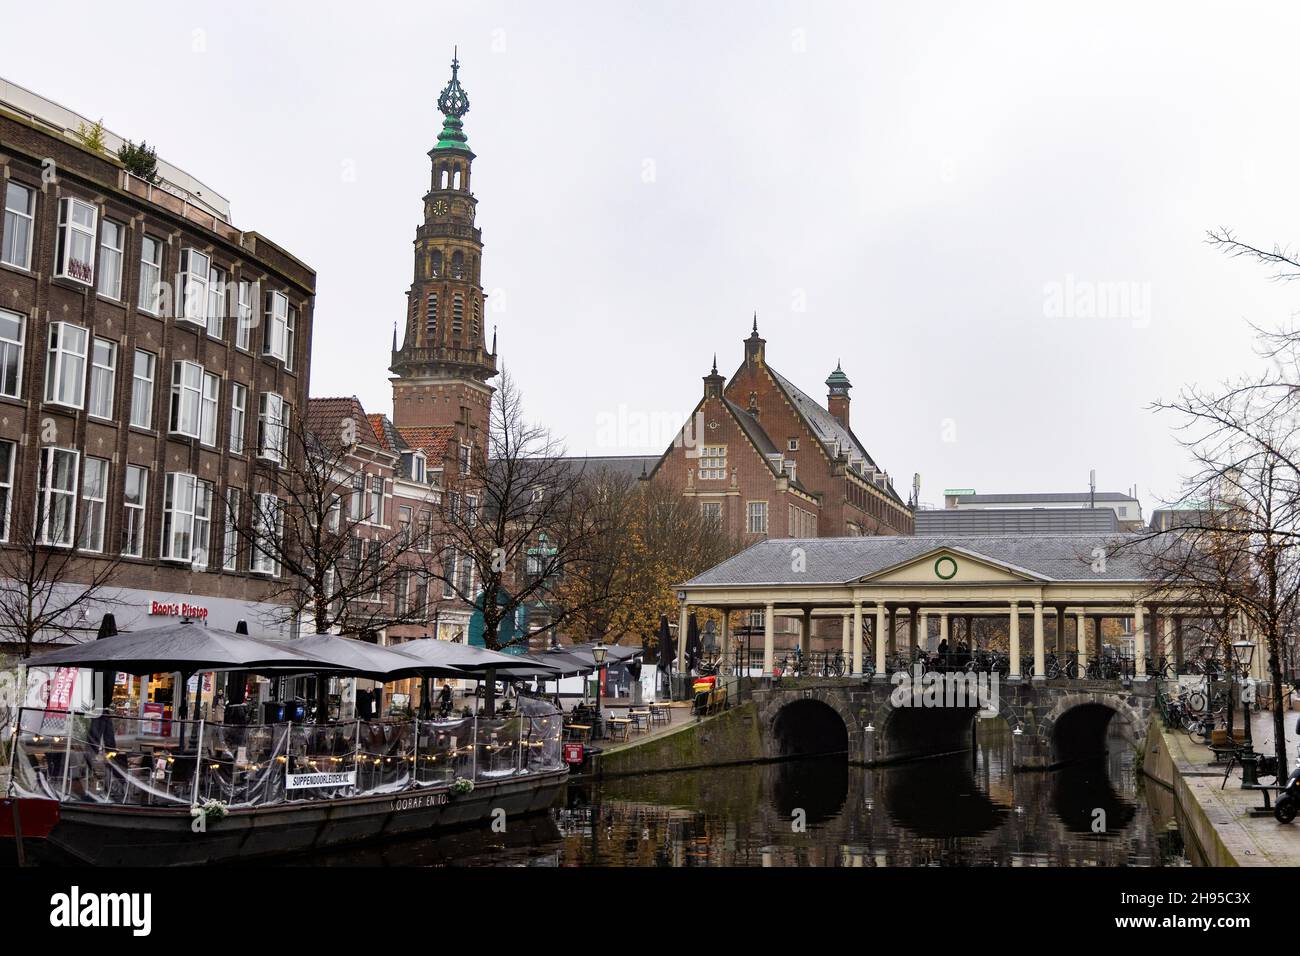 The Koornbrug (corn bridge) and city hall on the Nieuwe Rijn in Leiden, Netherlands. Stock Photo